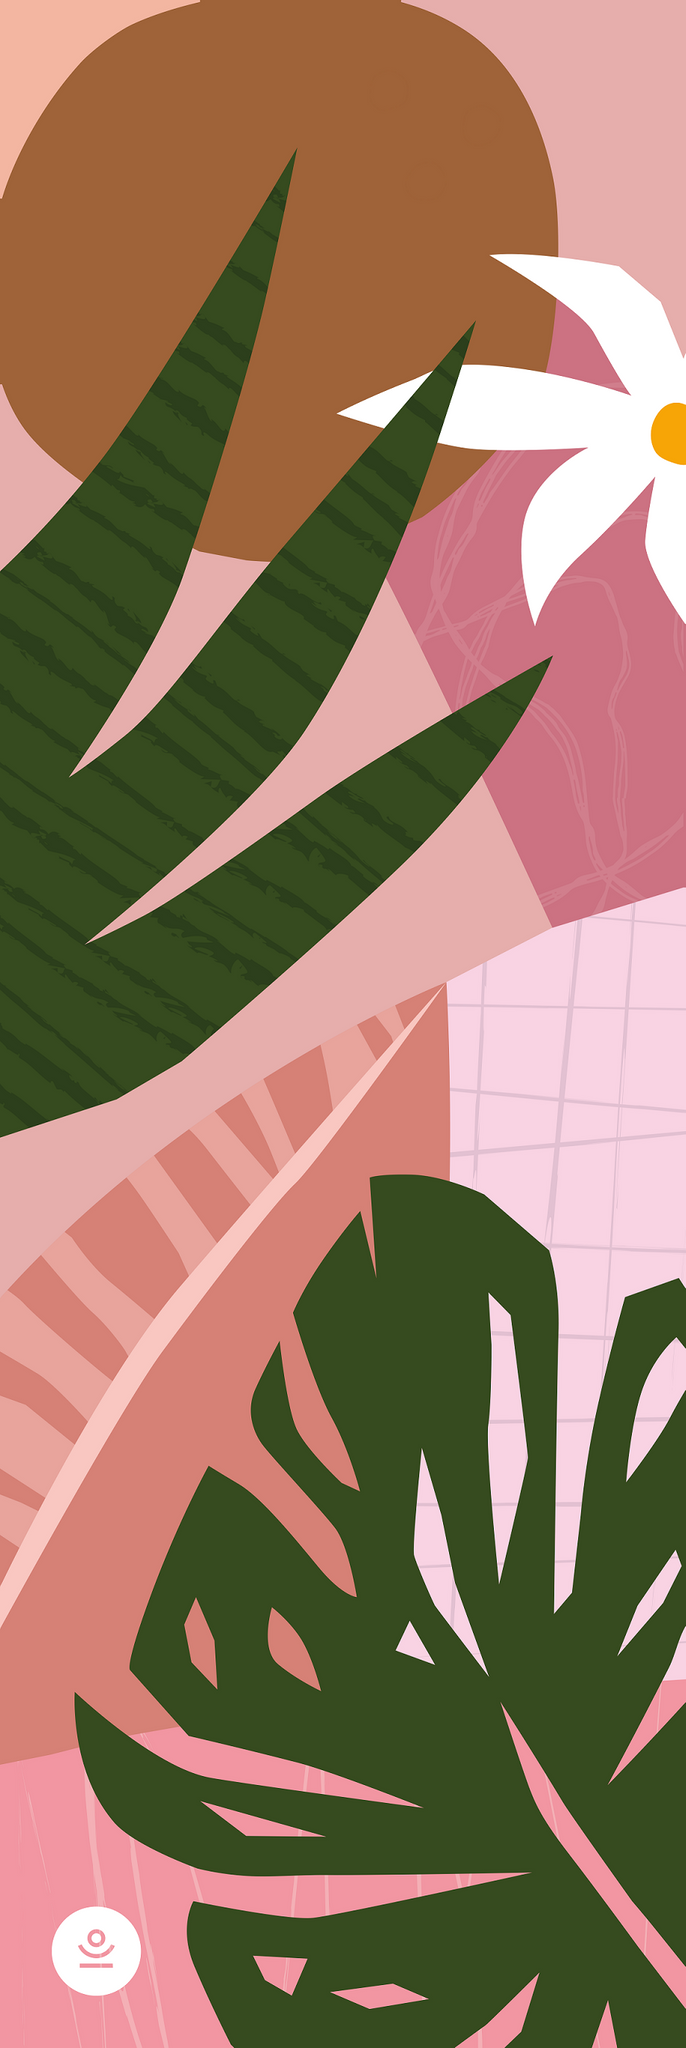 Das Design der Tropicana Yogamatte ist von Reisen inspiriert durch die Palmenblätter und tropischen Blumen. Sie ist sehr farbenfroh und mädchenhaft mit rosa und grünen Tönen. Diese Sportmatte ist aus Naturkautschuk nachhaltig und vegan hergestellt. Sie ist rutschfest und zeichnet sich durch ihr einzigartiges Design aus. Größe: 183 x 61 cm Dicke: 2,5 - 3 mm Gewicht: 1,9 - 2,4 kg Inklusive: Tragegurt